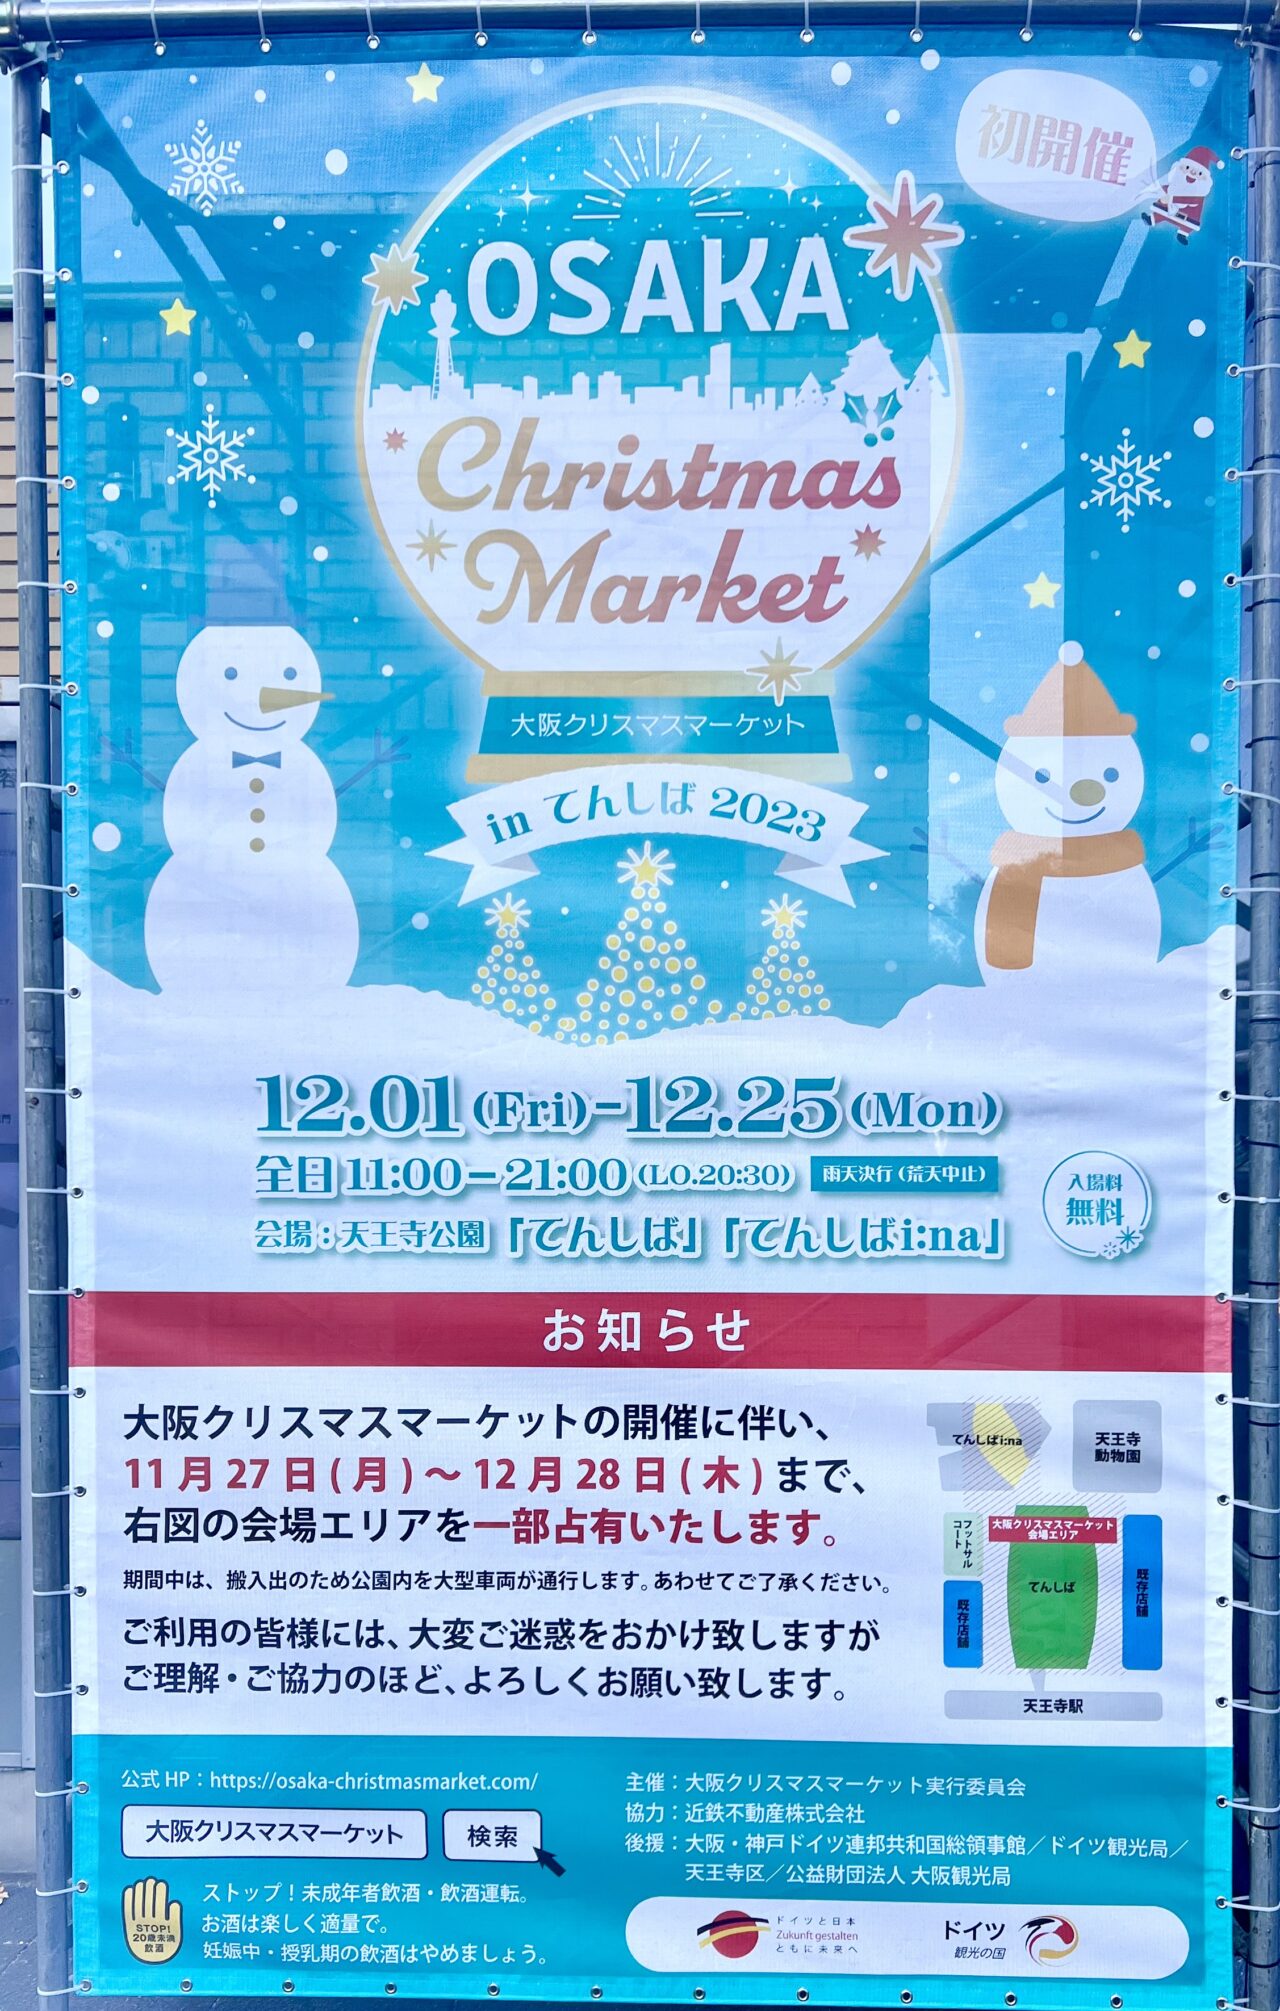 天王寺公園(てんしば)で開催されている「大阪クリスマスマーケットの看板です。